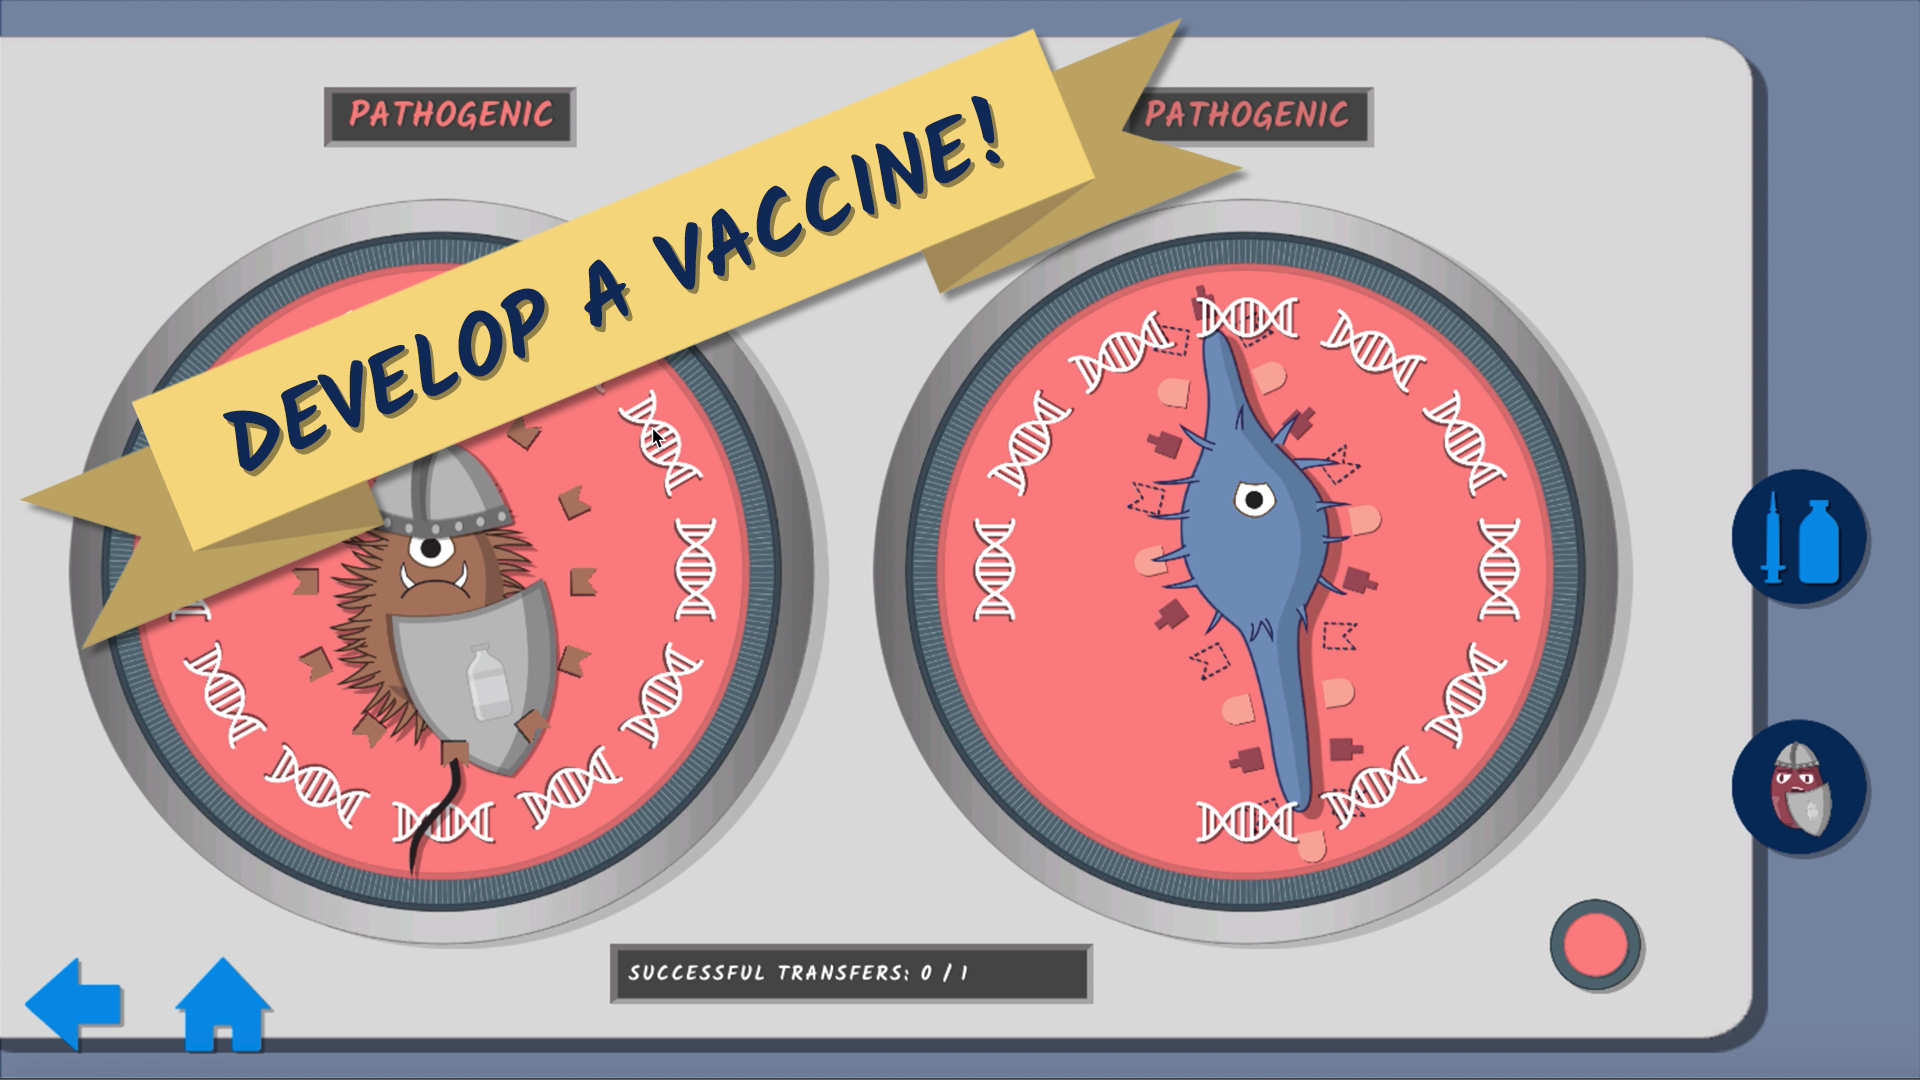 Designing multi-purpose vaccines